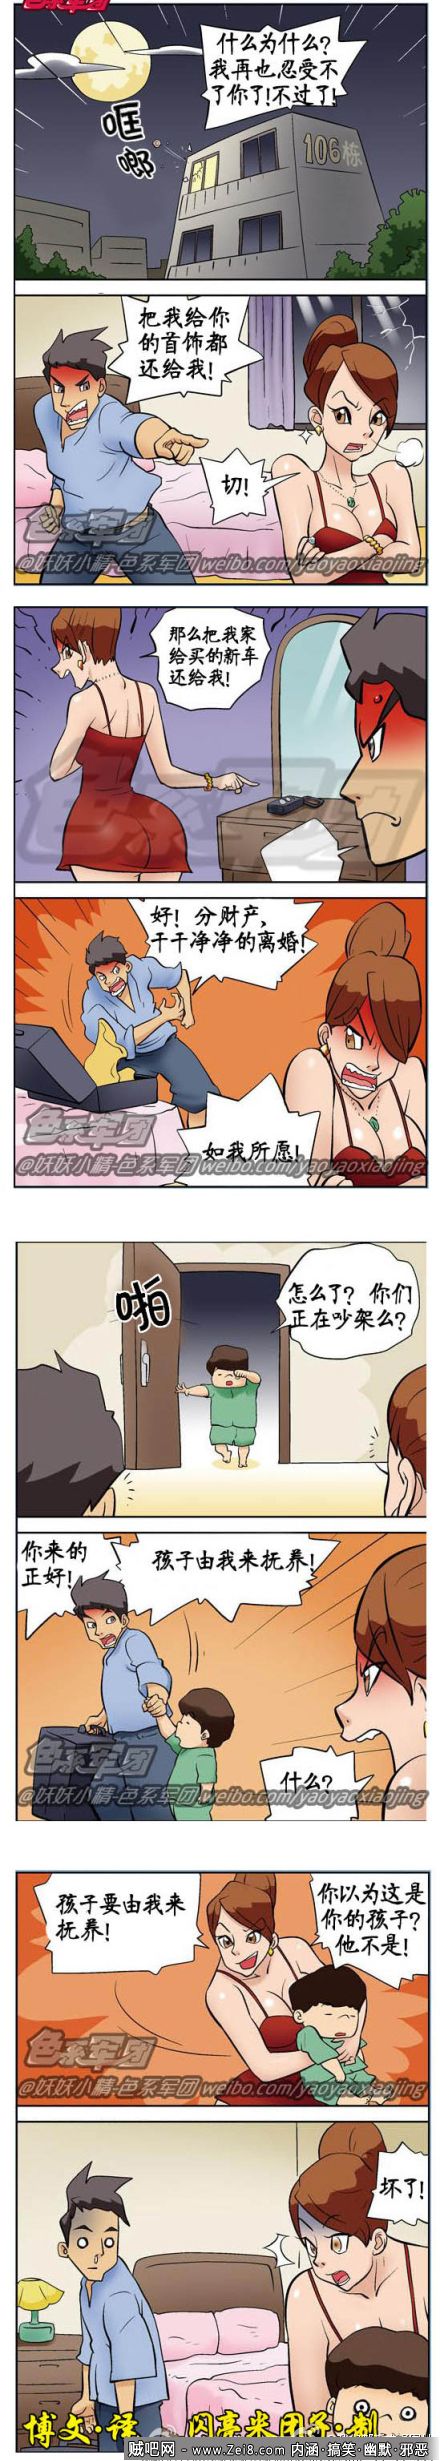 [情侣韩国漫画]：谁的孩子